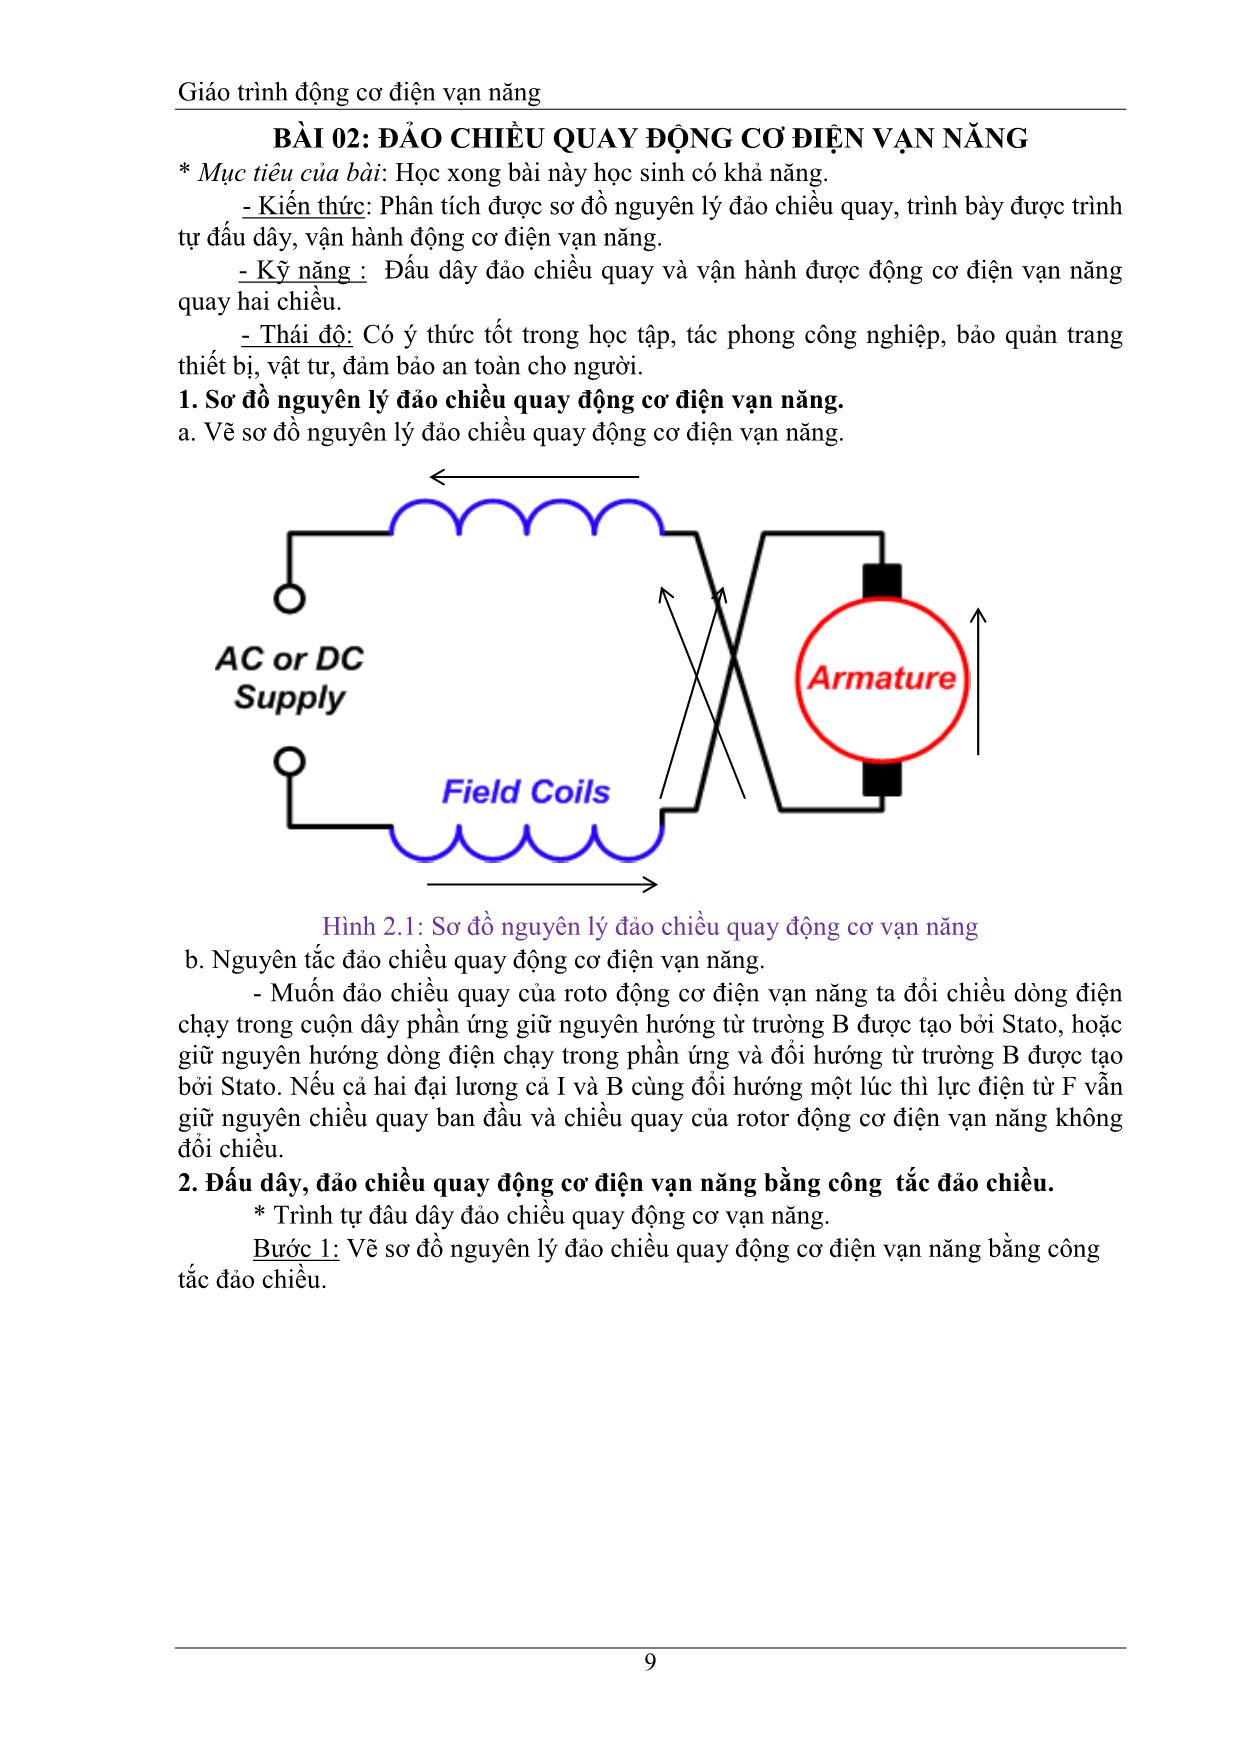 Giáo trình Động cơ điện vạn năng trang 9